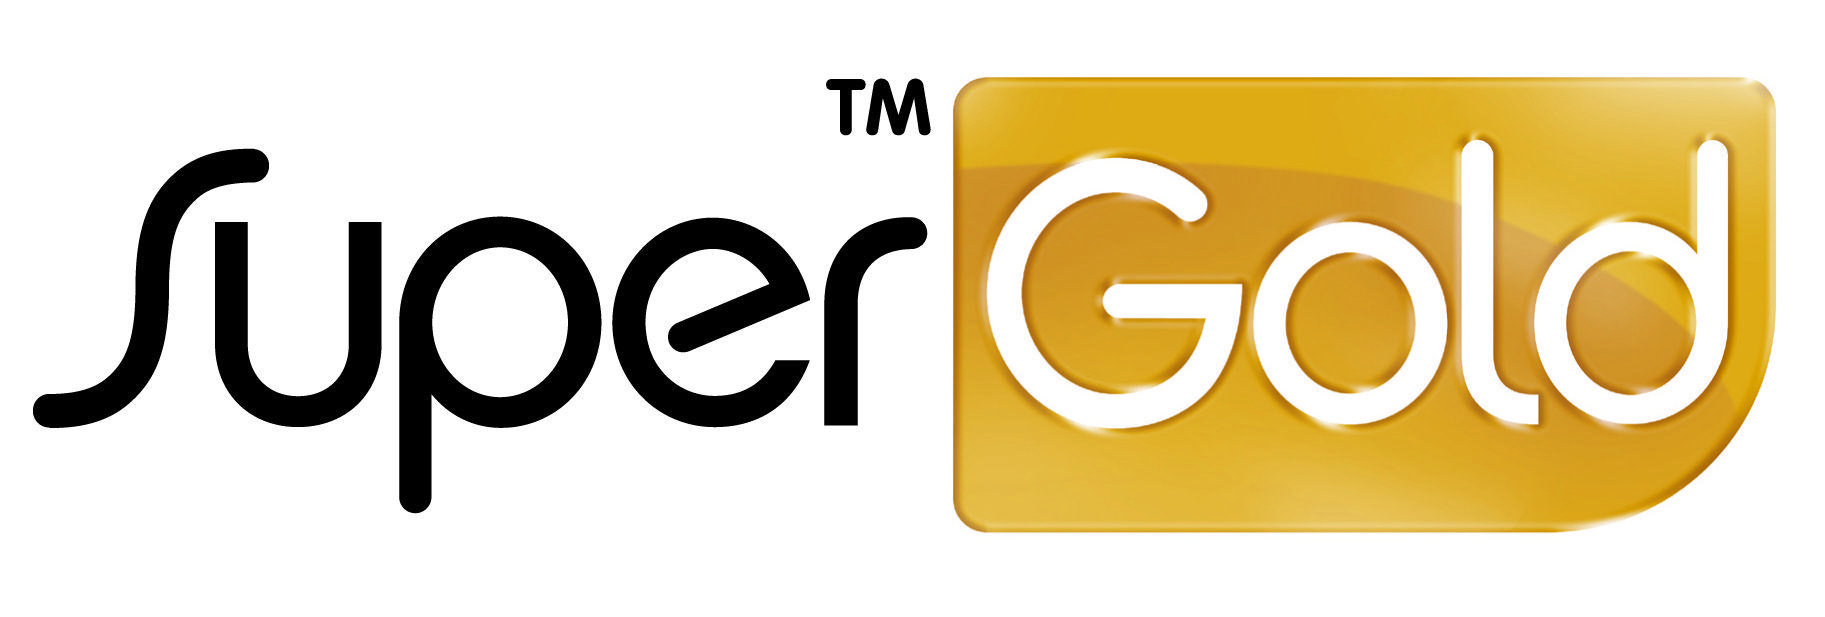 Gold Logo - super gold logo high resolution - Judd Opticians